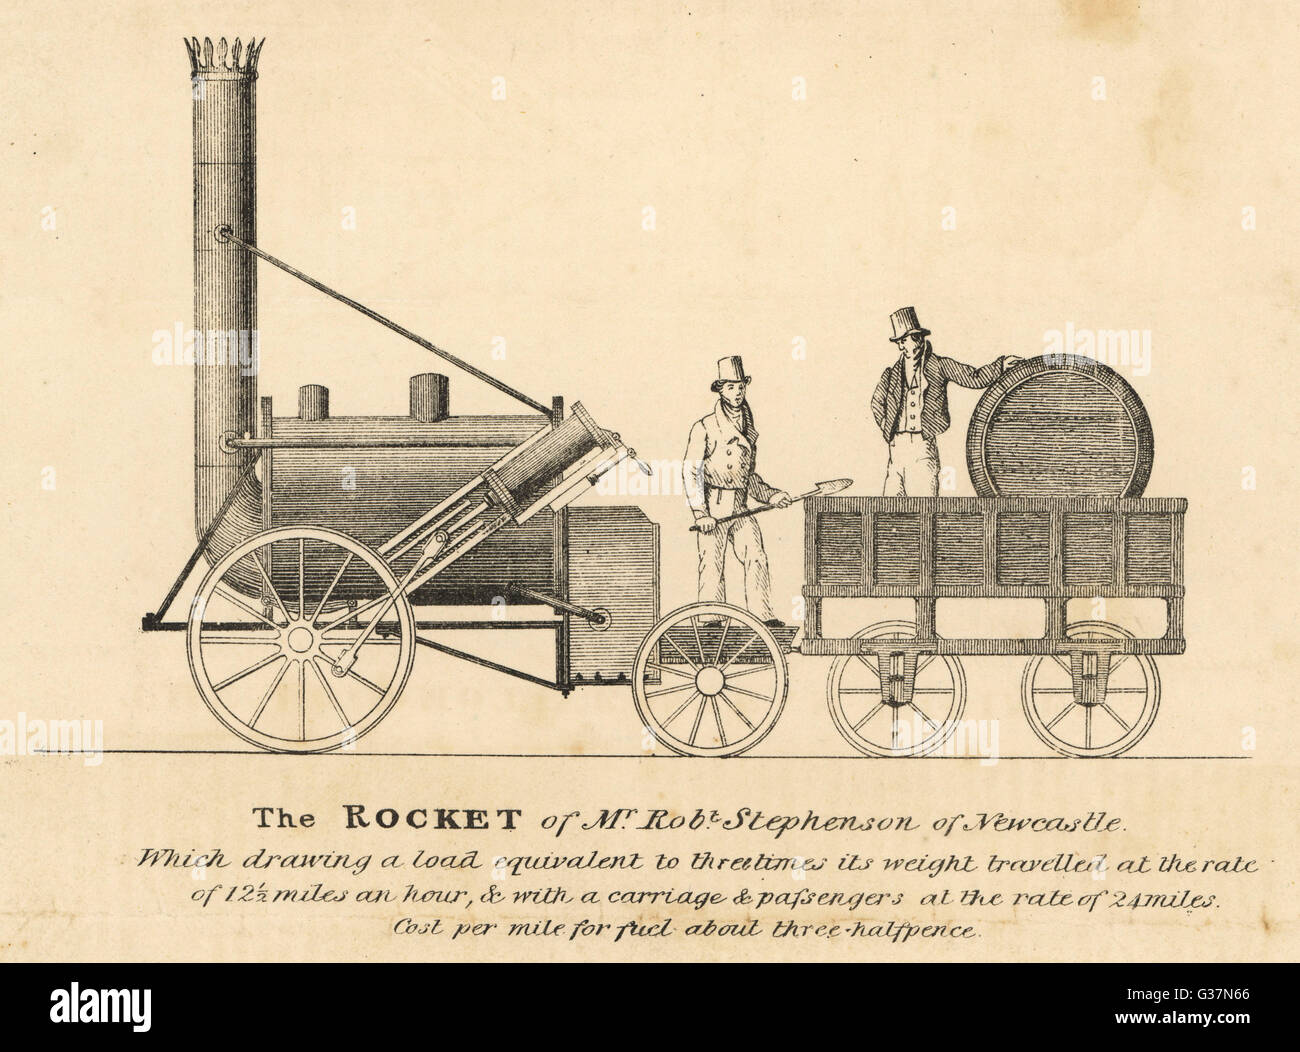 L 'Rocket' telle qu'elle a pris part à la Liverpool & Manchester Railway ; la concurrence (qu'il a remporté) Date : 6 octobre 1829 Banque D'Images